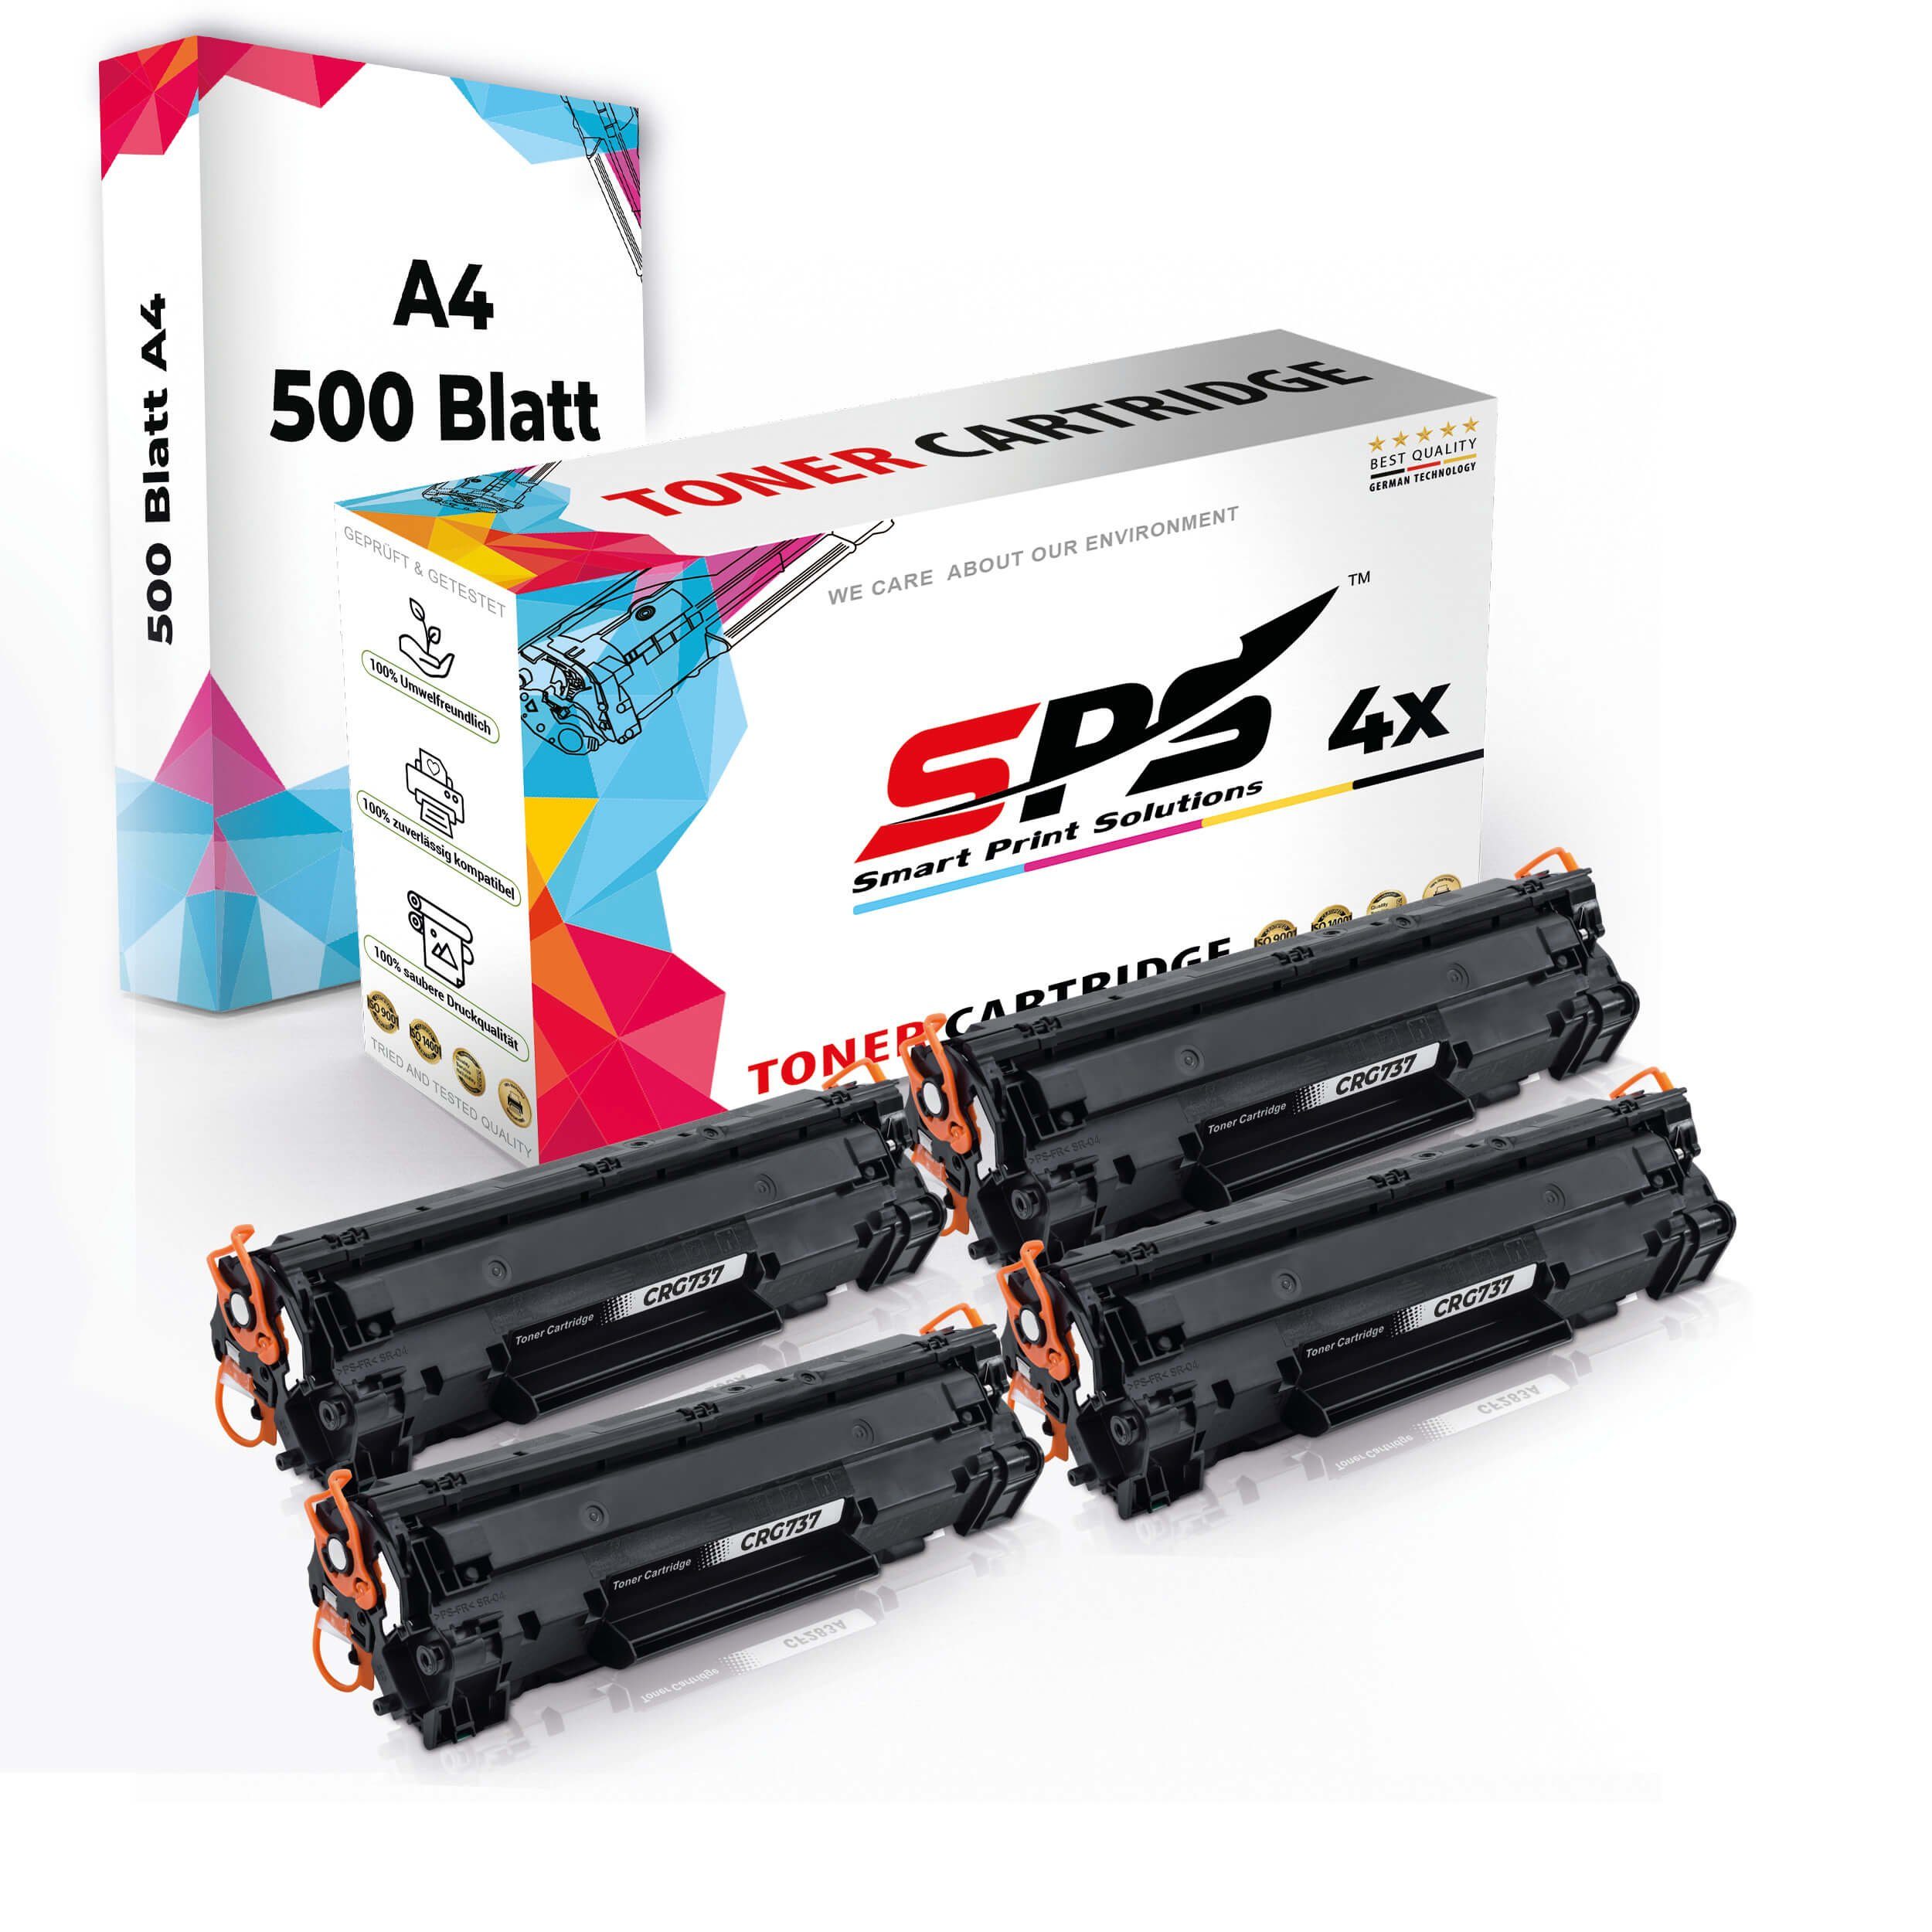 SPS 4x + Pack, A4 Druckerpapier Kompatibel, Tonerkartusche Toner,1x Multipack Set 4x A4 (4er Druckerpapier)